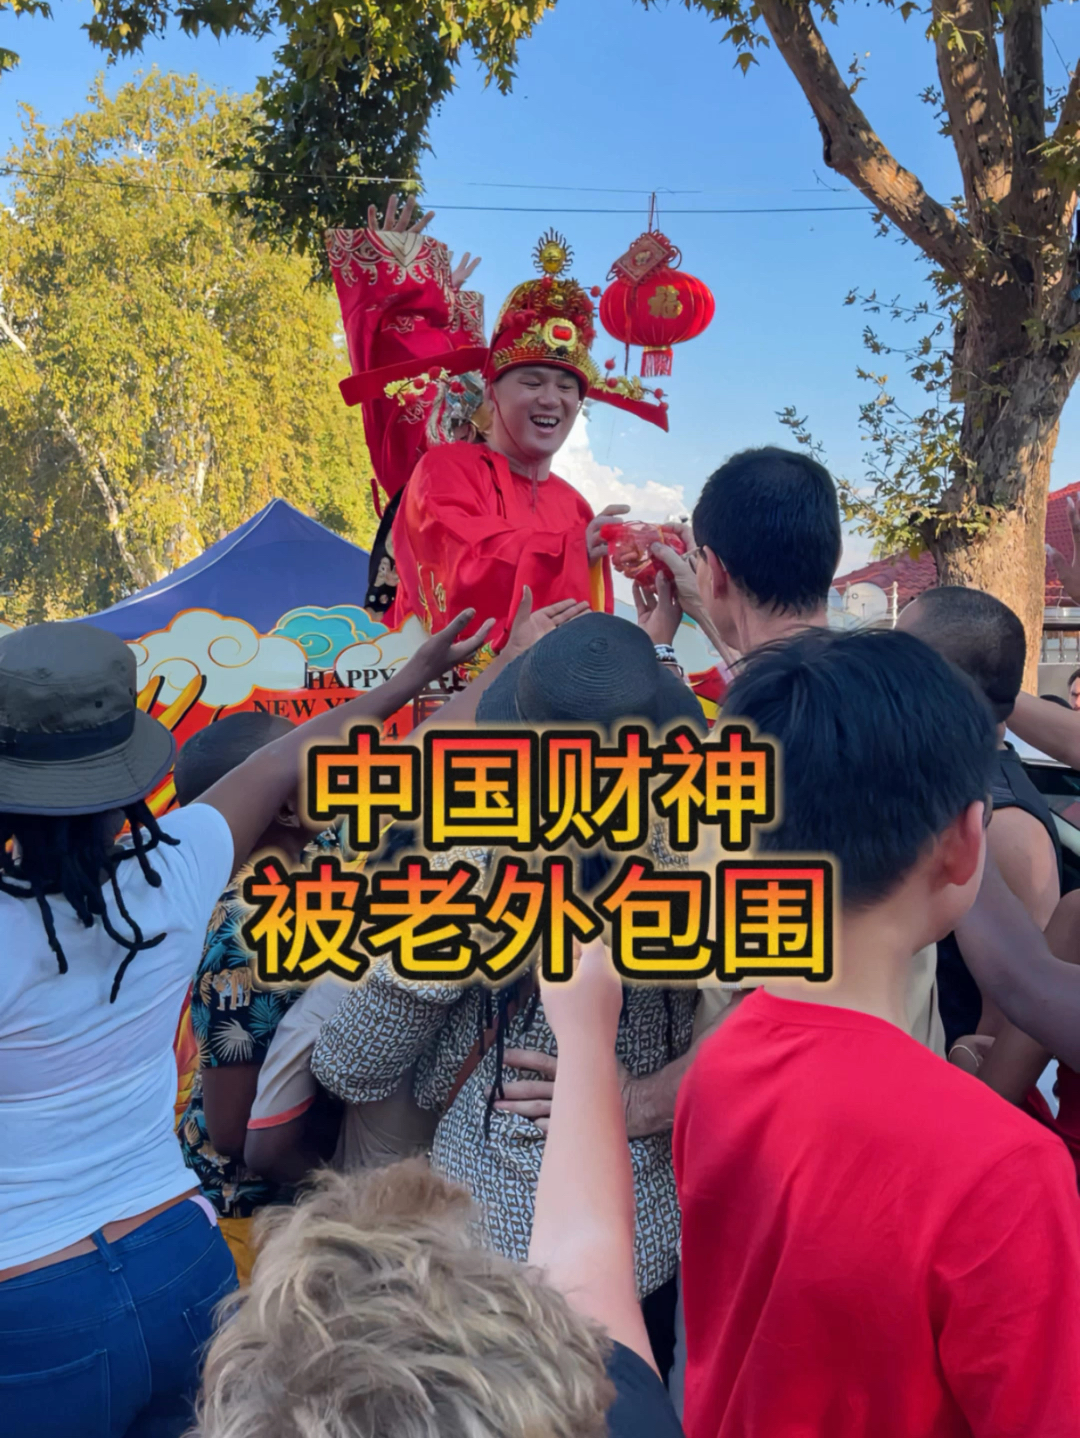 中华文化强势输出，春节庙会上财神被老外包围，为了红包疯狂